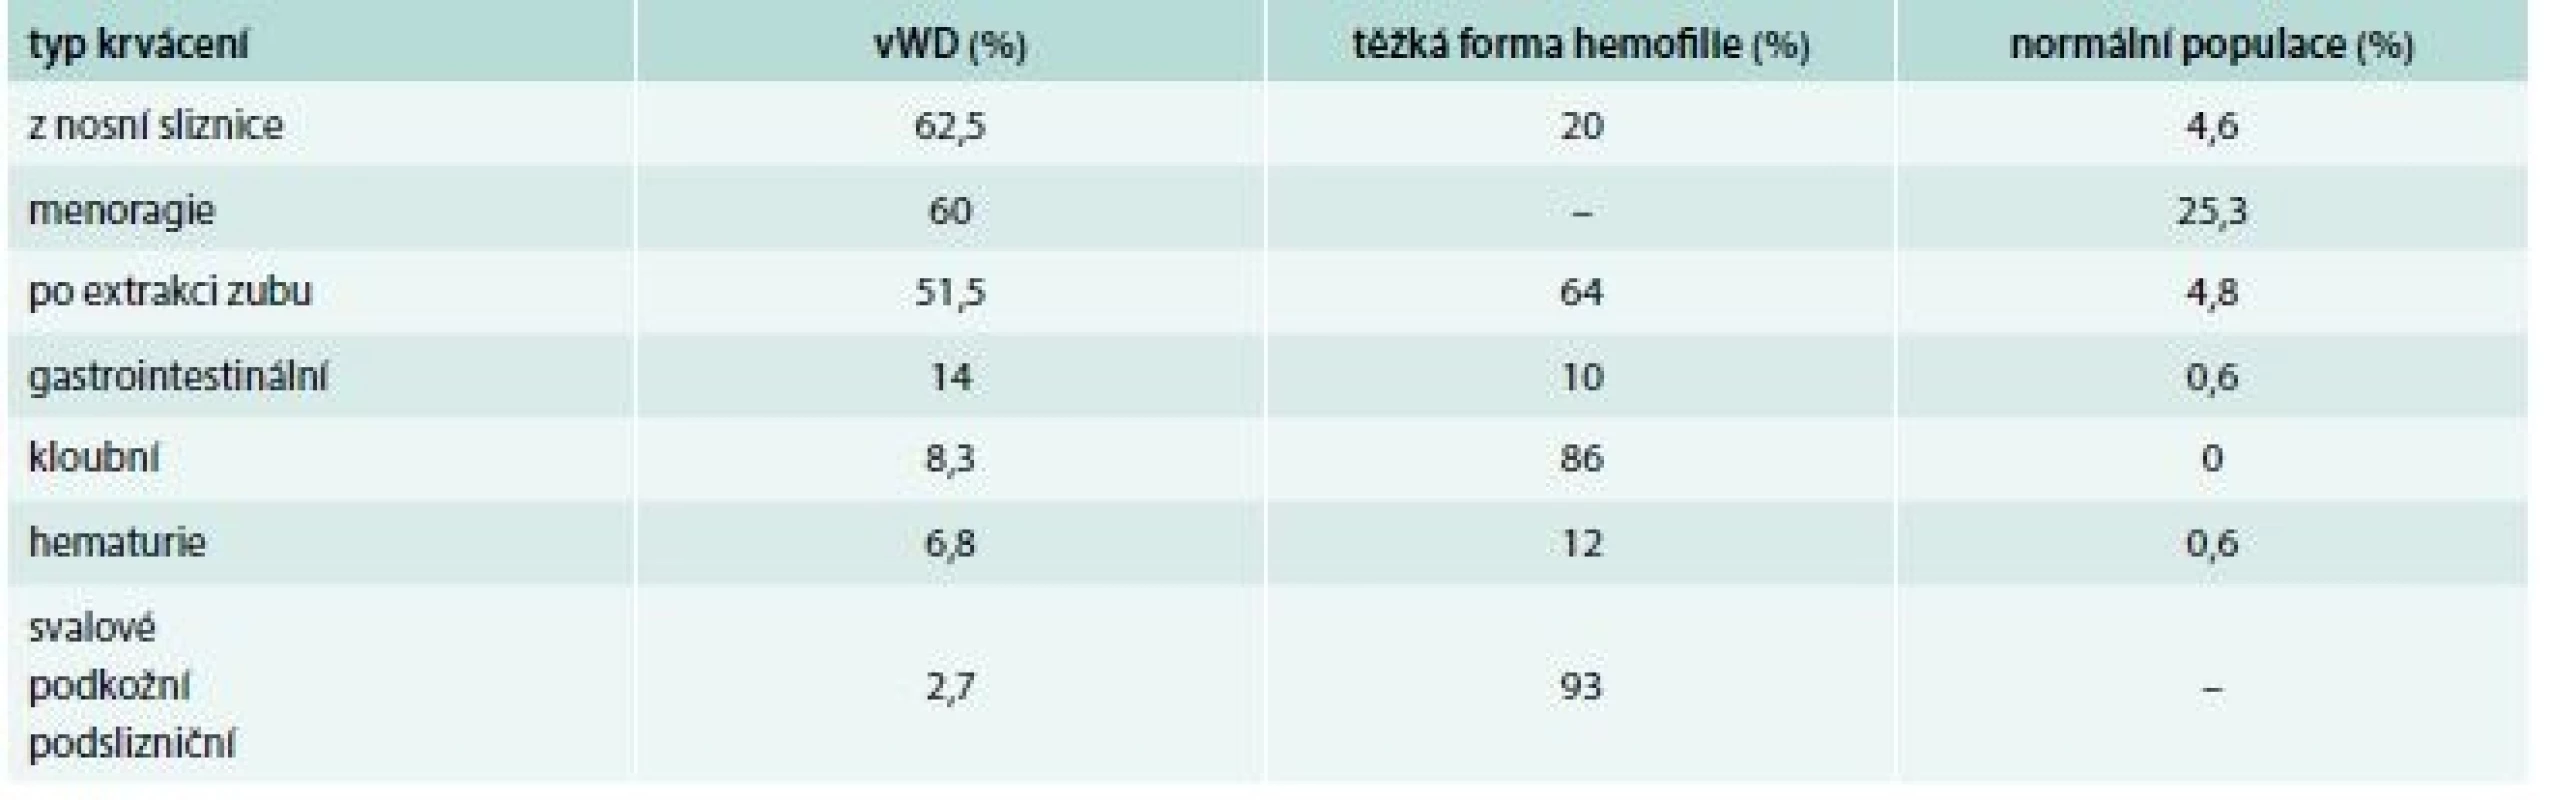 Frekvence krvácení (%) podle lokalizace u vWD a těžké formy hemofilie. Upraveno podle [10,11]